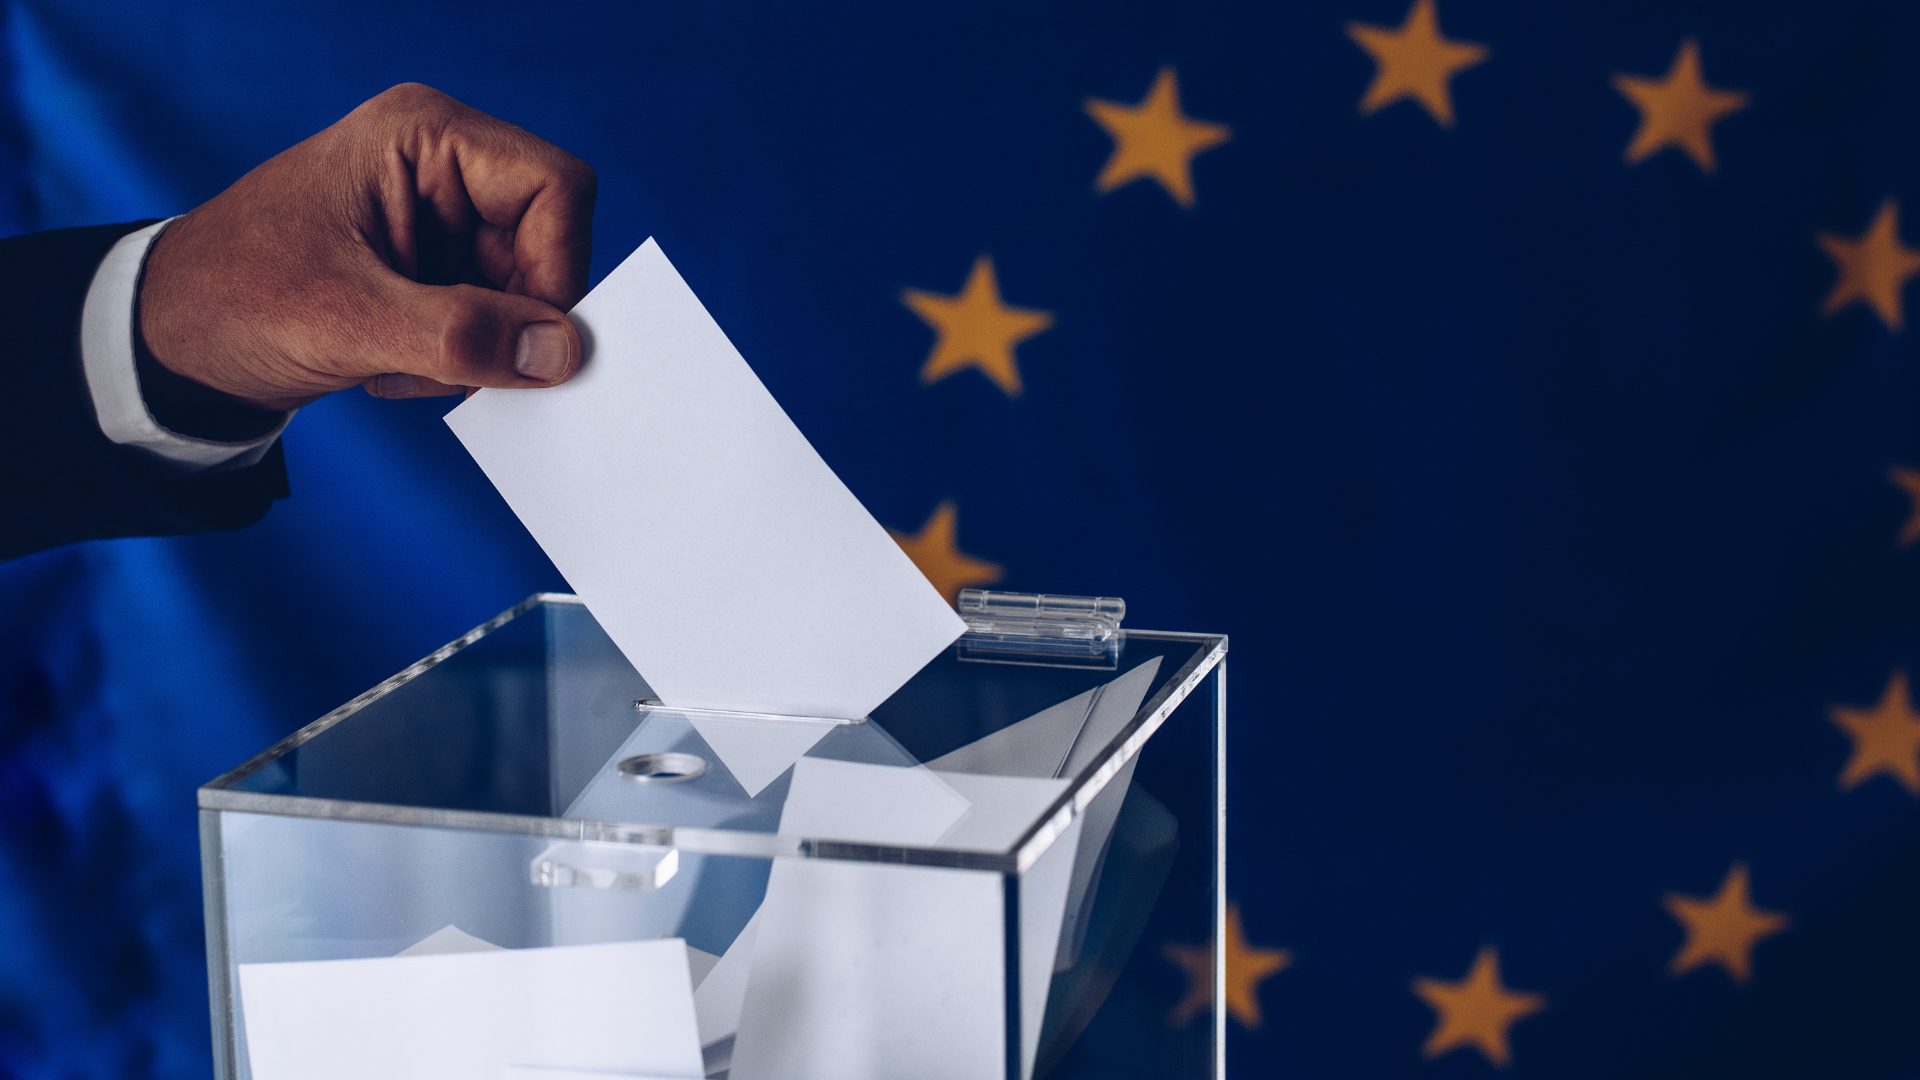 Zgjedhje në BE. Foto: Djedzura në Canva